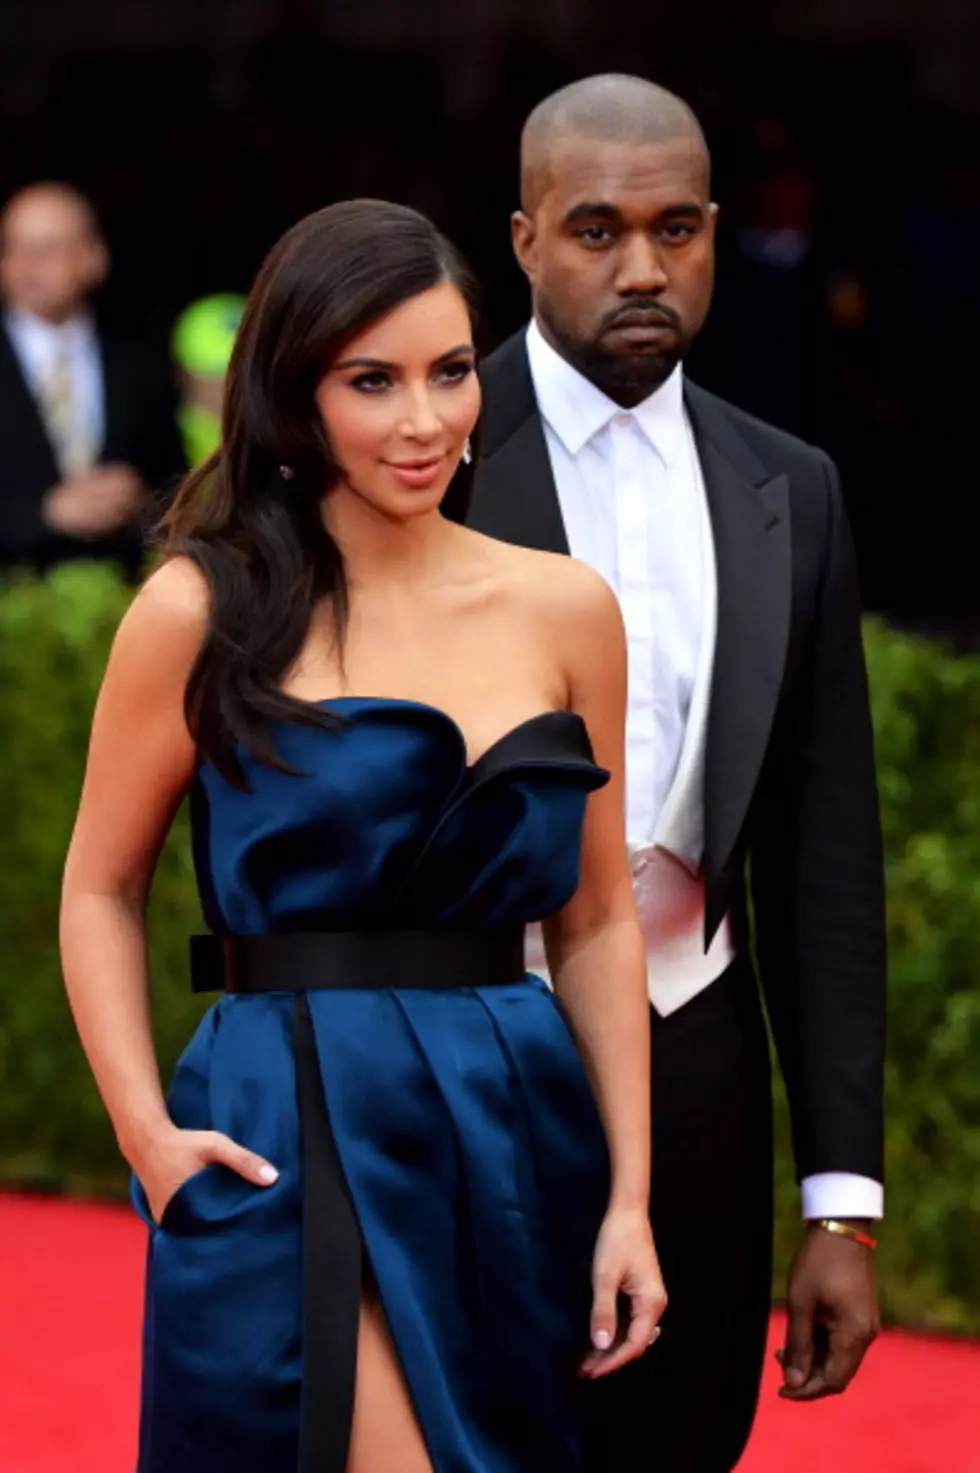 Kanye West & Kim Kardashian Wedding Details Revealed